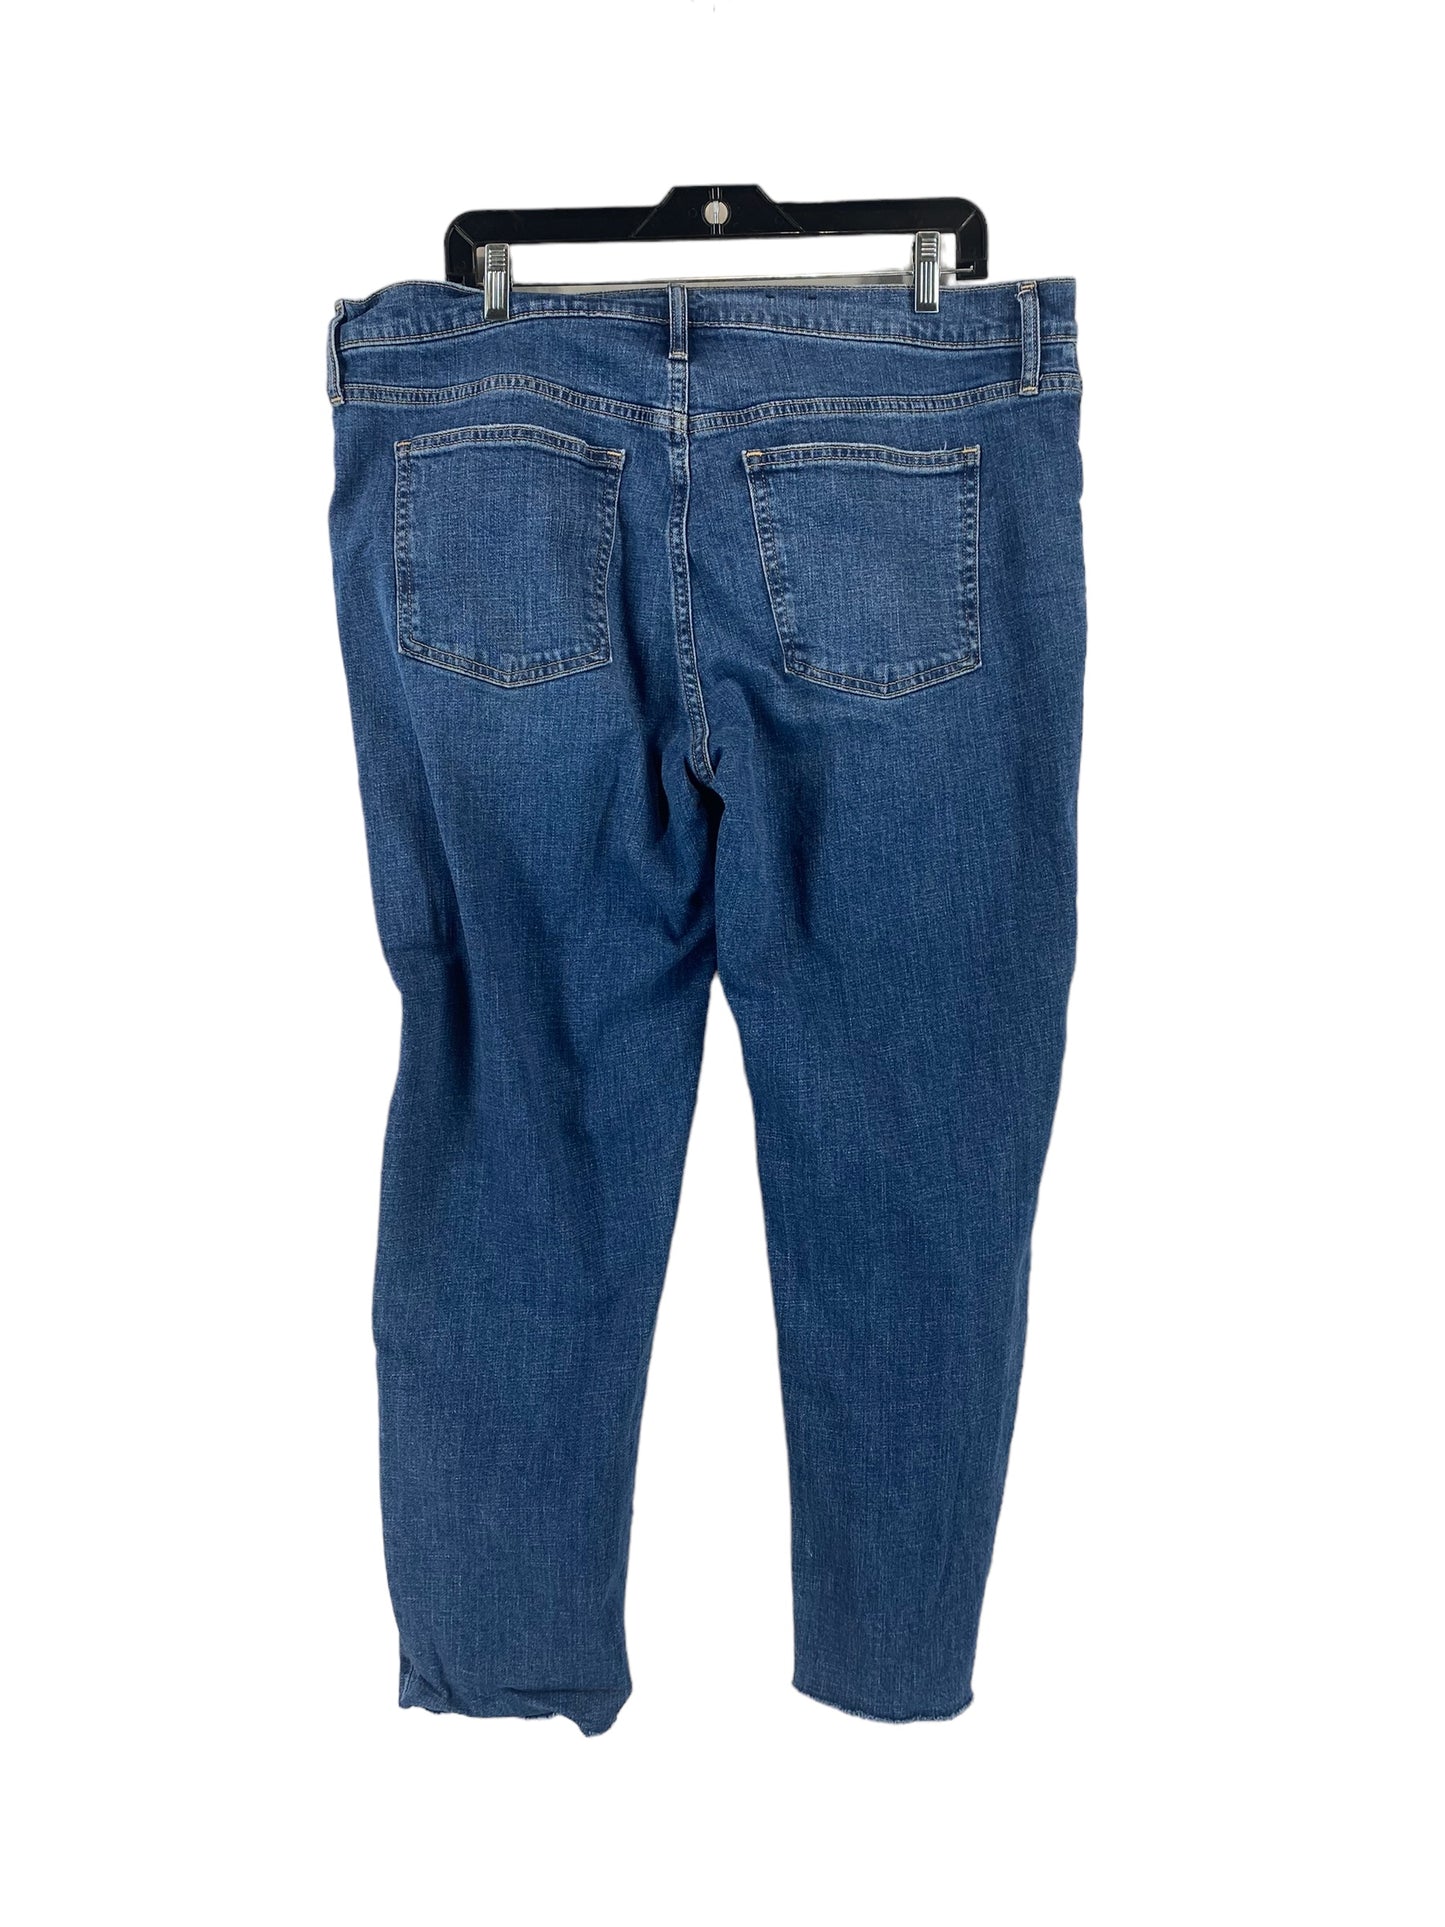 Jeans Boyfriend By Gap  Size: 16